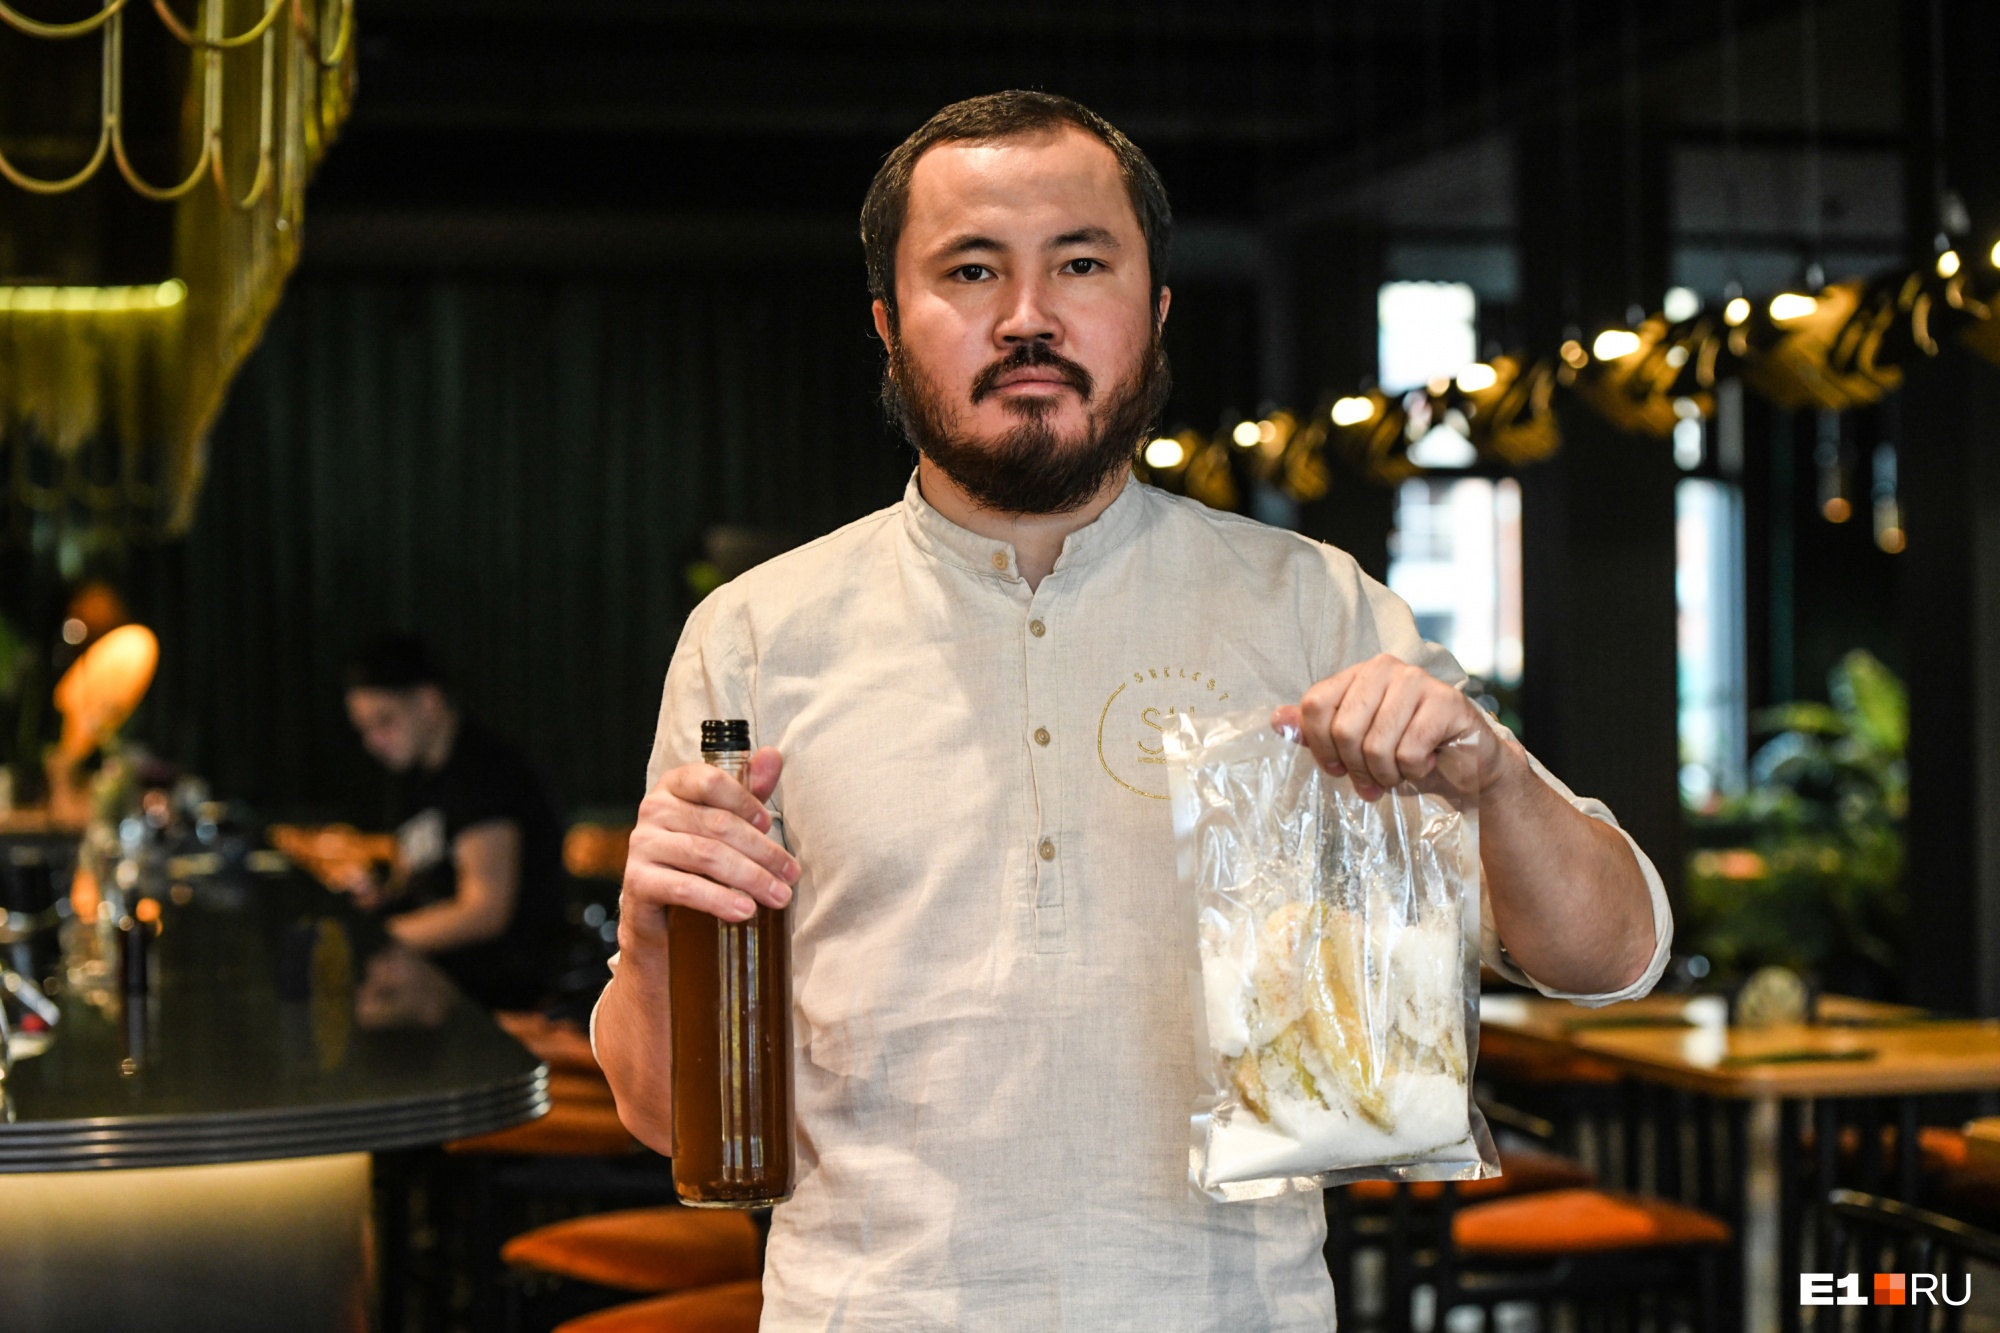 Пустил остатки борща на настойки: как бармен из Екатеринбурга спасает экологию